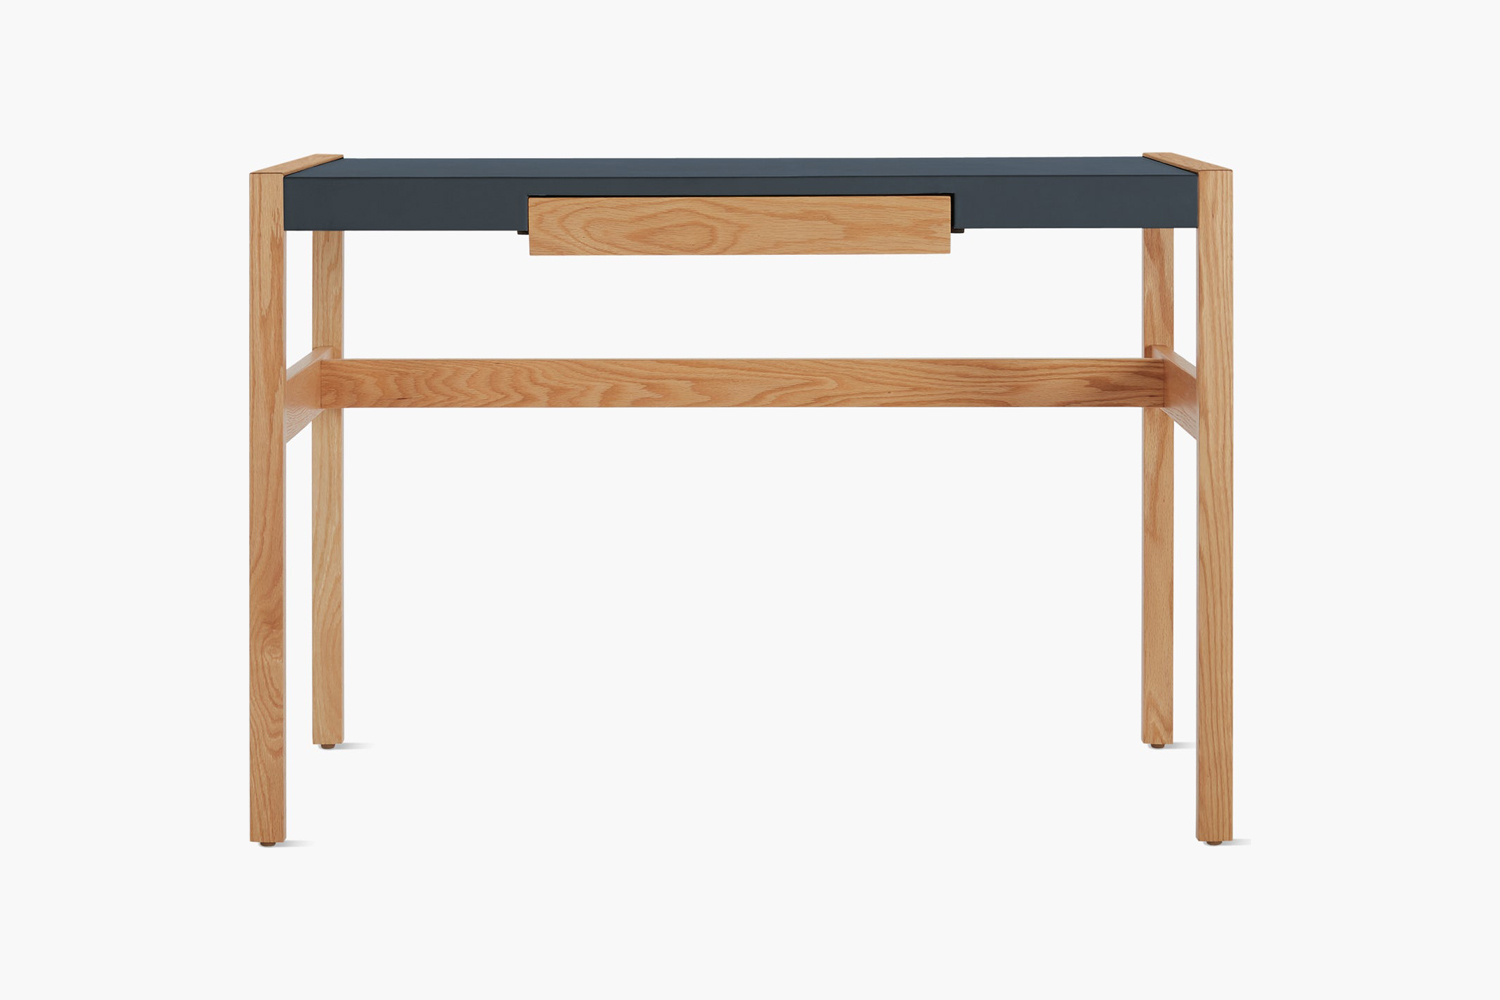 designed by jens risom in 1968, the risom desk comes in ebonized oak, oak, and 15